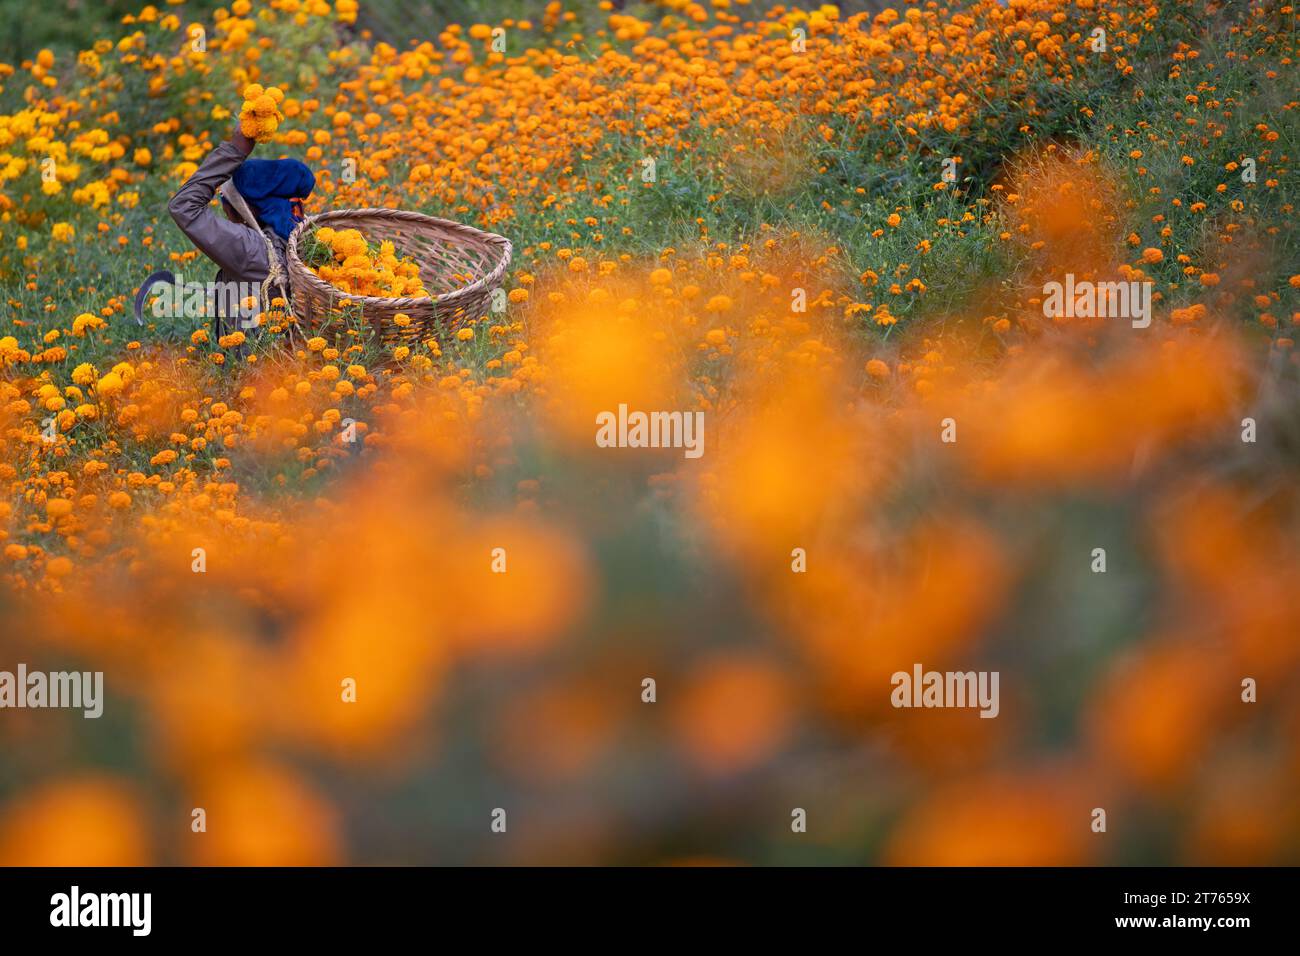 Marigold flowers for Tihar festival Stock Photo